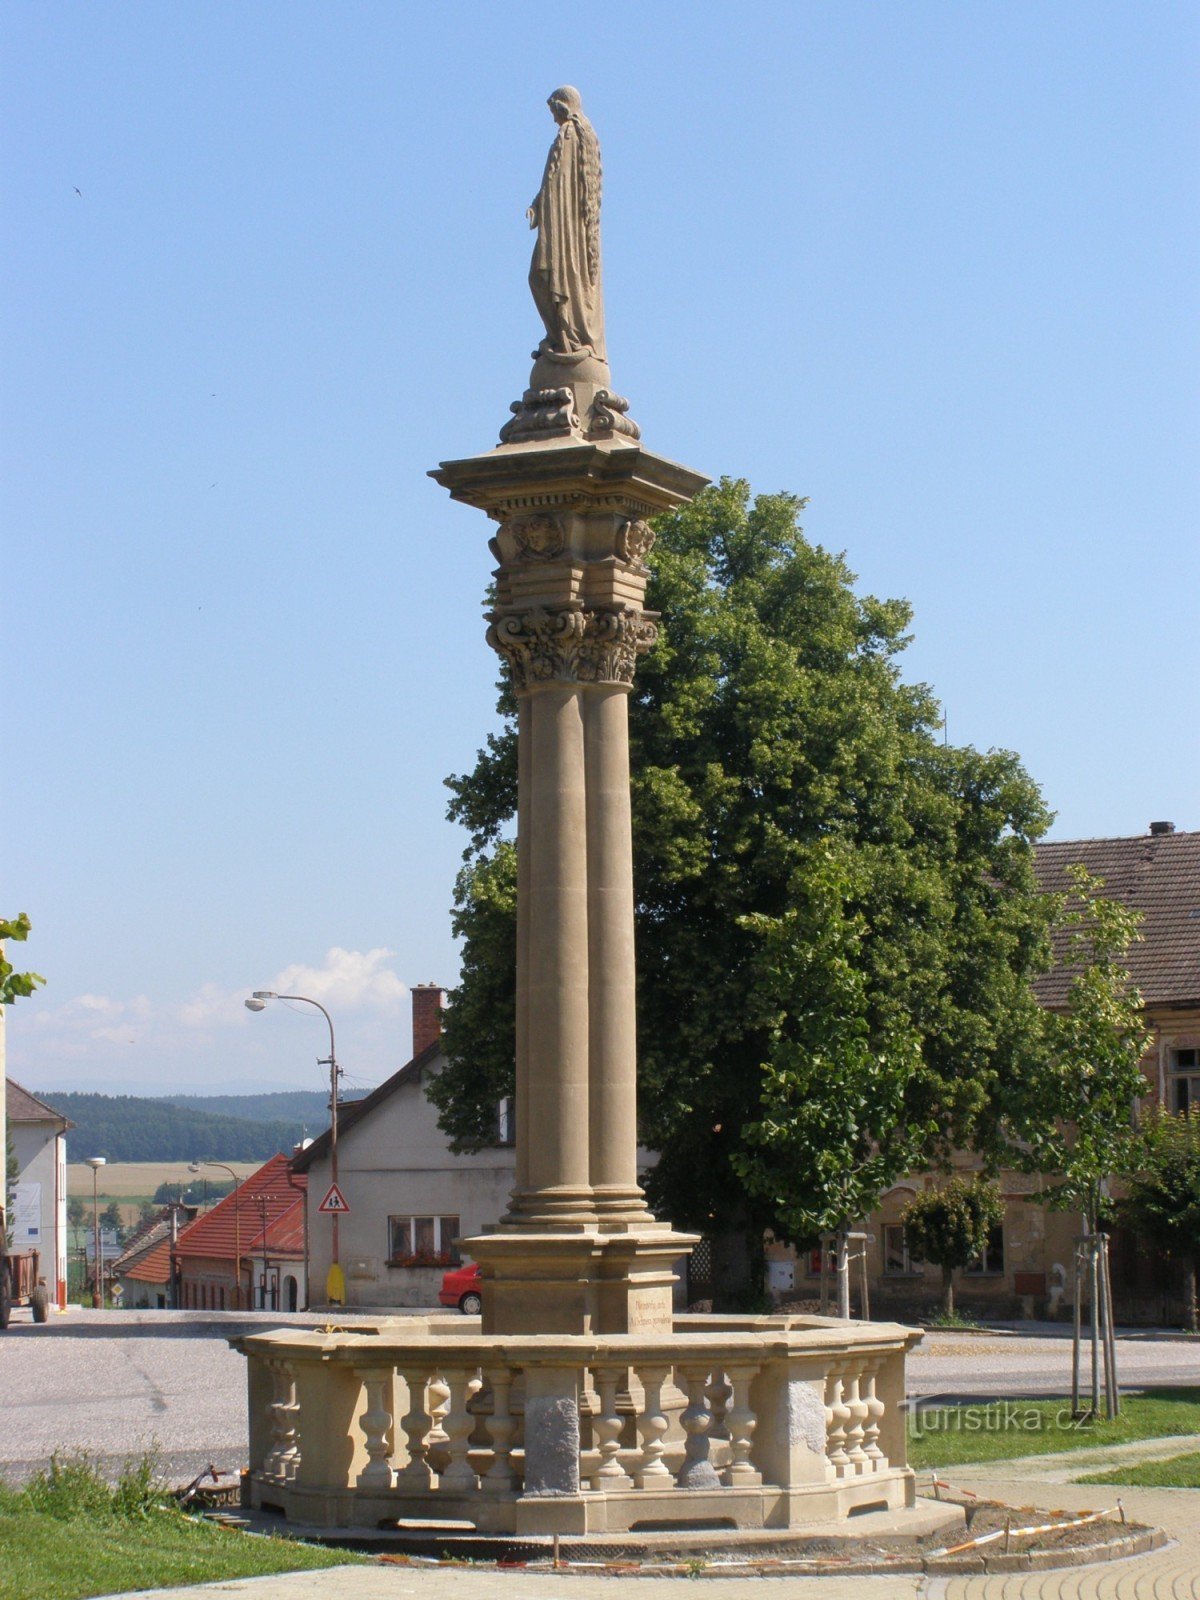 Mlázovice - plads, sæt af monumenter